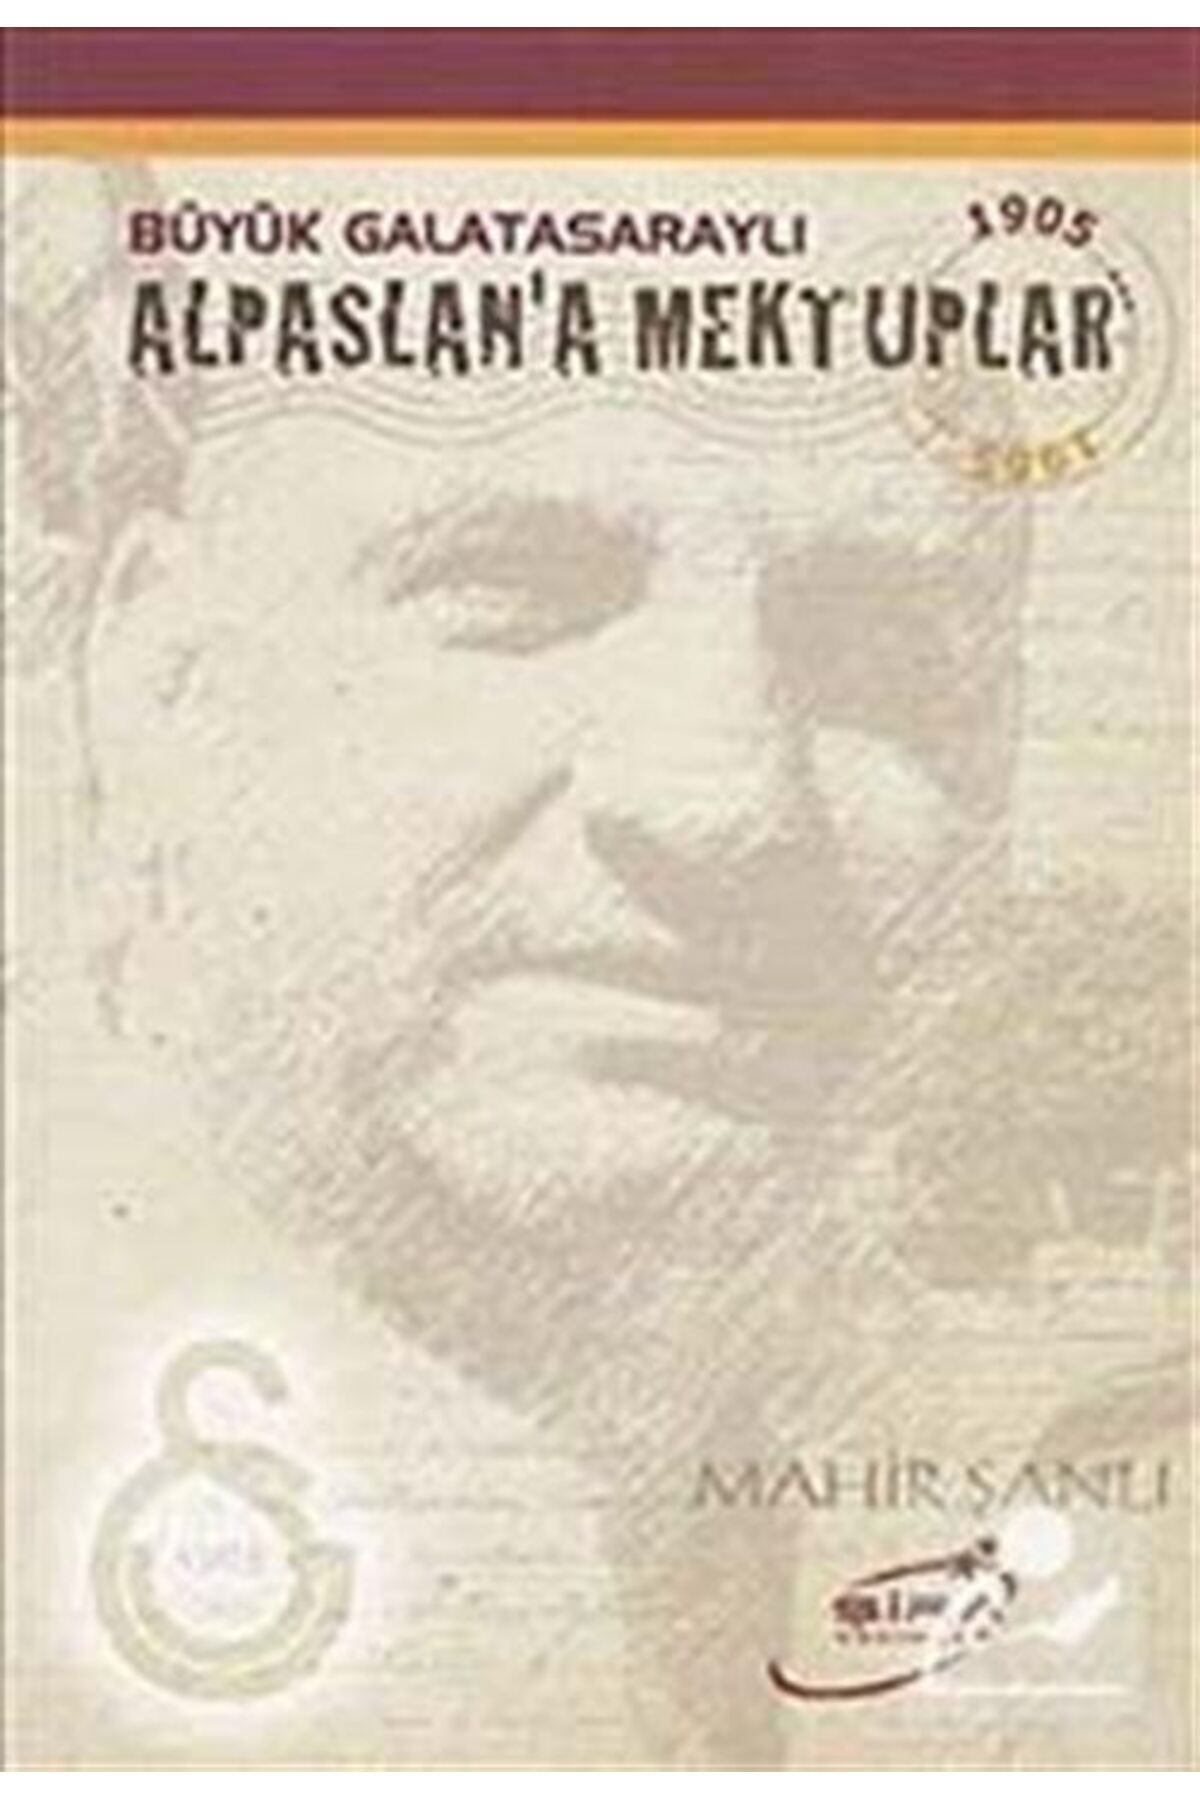 Şira Yayınları Büyük Galatasaraylı Alpaslan’a Mektuplar - Mahir Şanlı